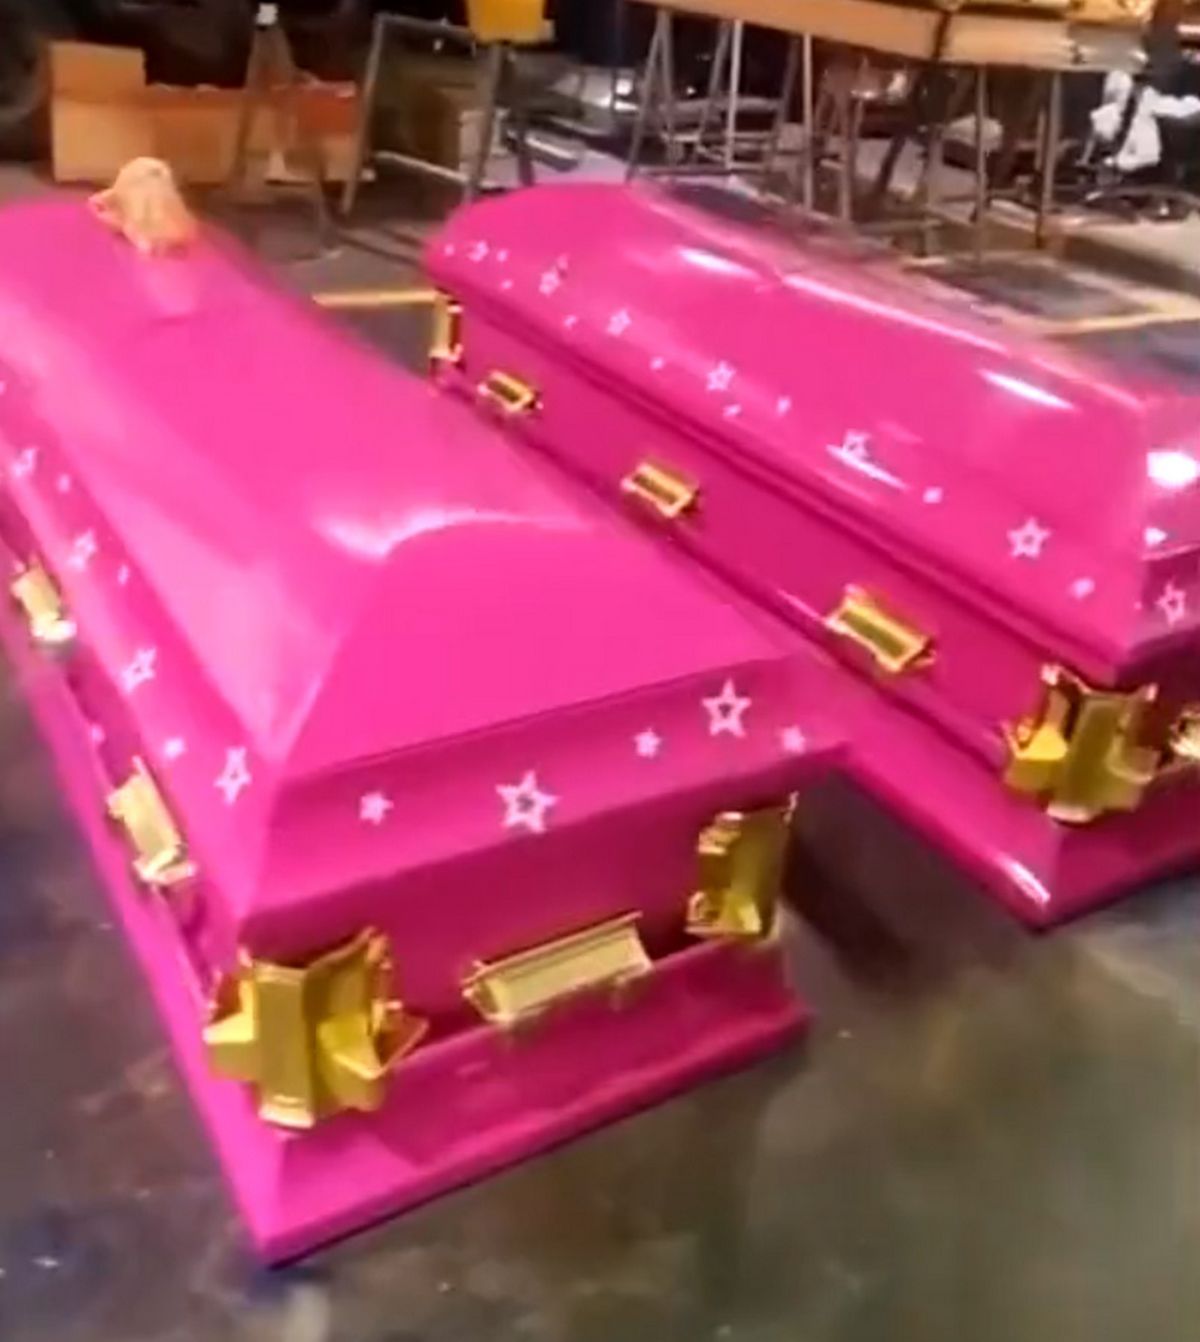 Les pompes funèbres proposent des cercueils roses sur le thème de Barbie pour les fans de la poupée emblématique.